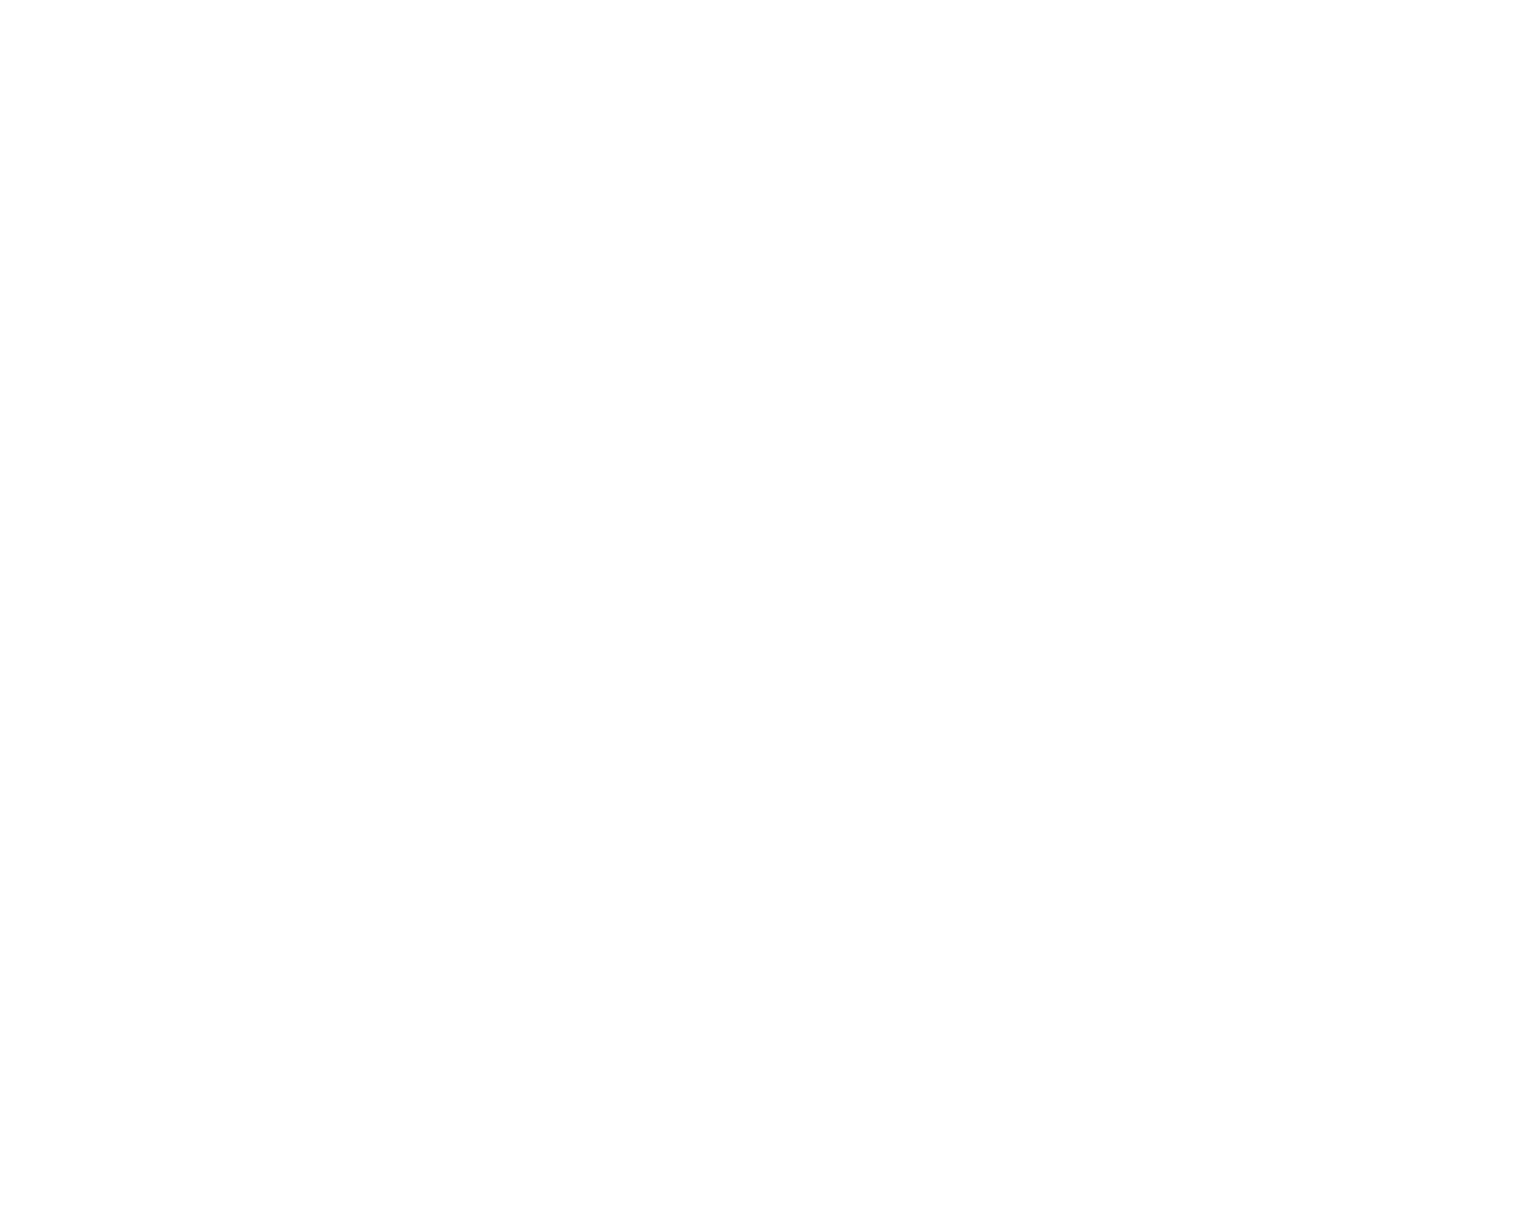 Osotspa logo for dark backgrounds (transparent PNG)